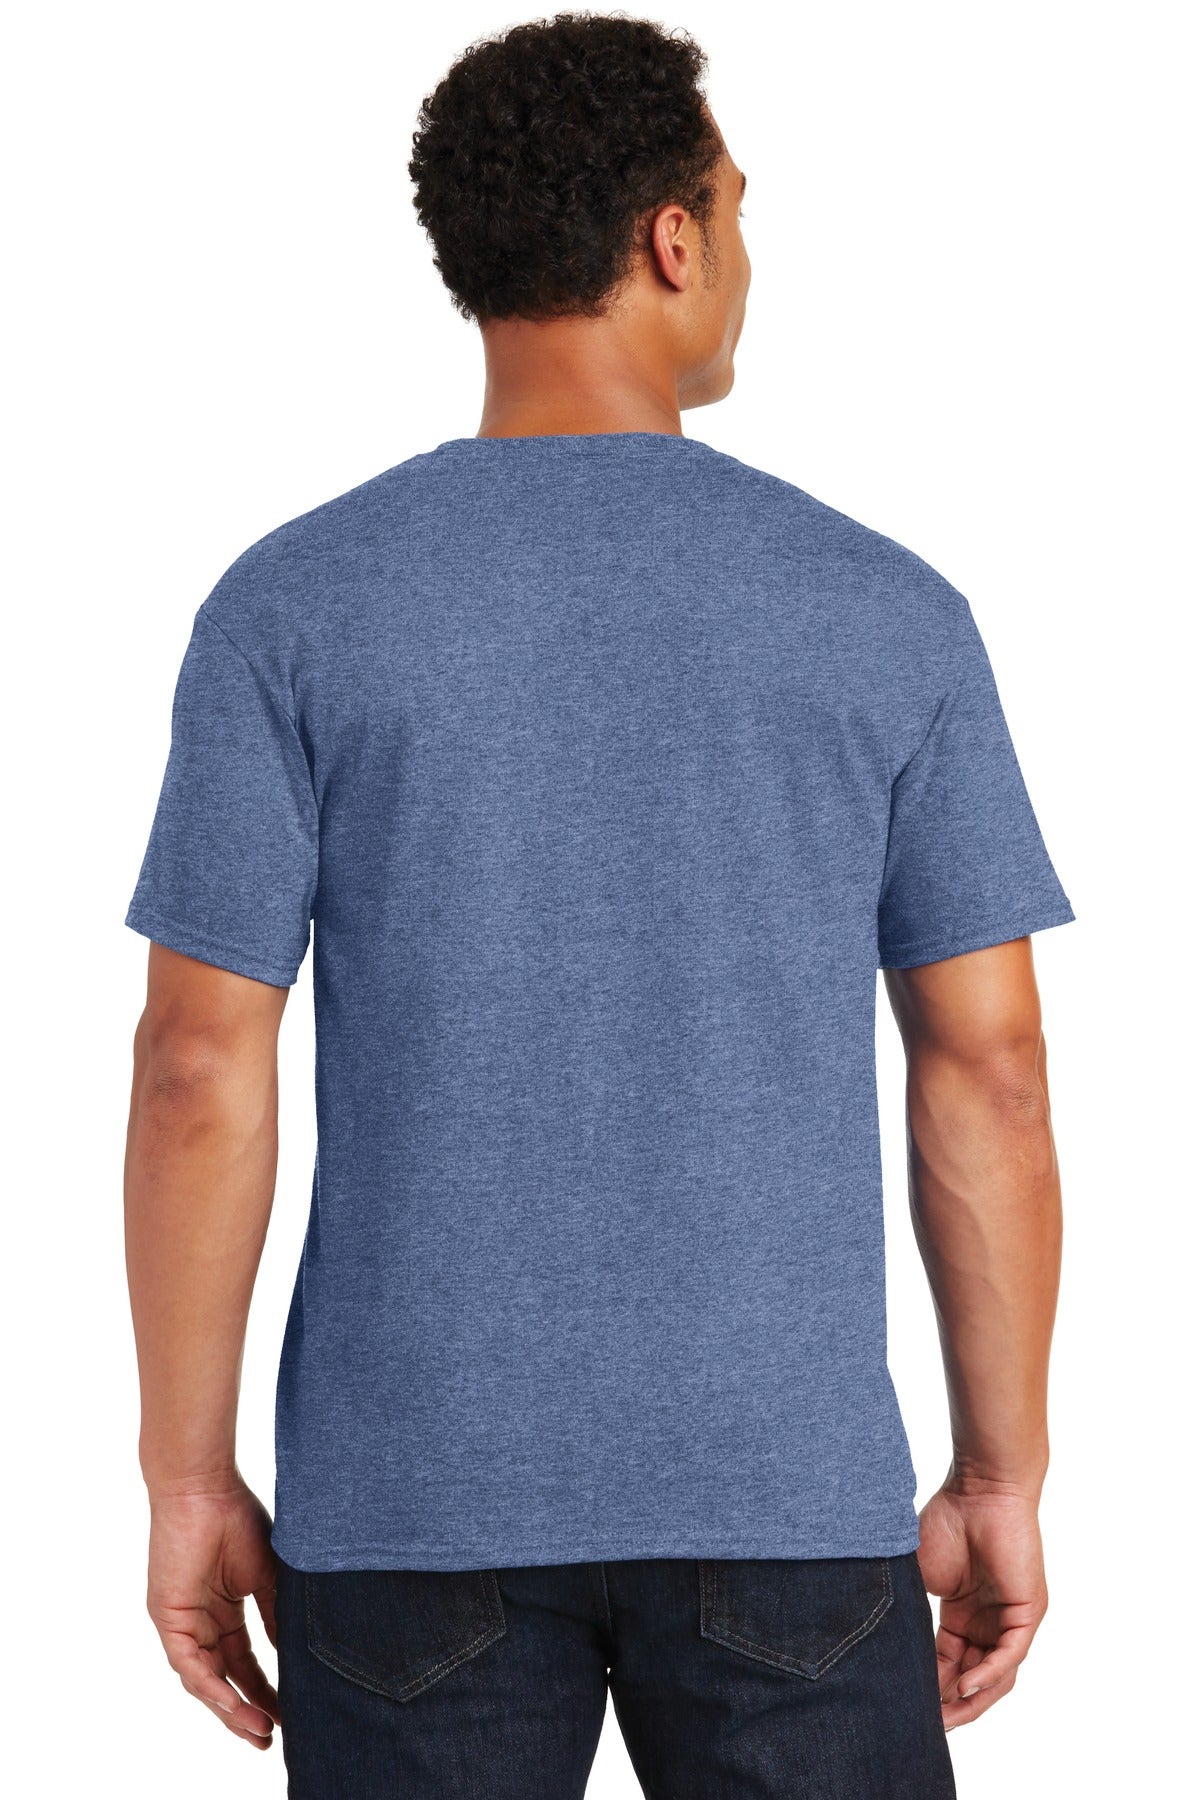 JERZEES® - Dri-Power® 50/50 Cotton/Poly T-Shirt. 29M [Vintage Heather Blue] - DFW Impression